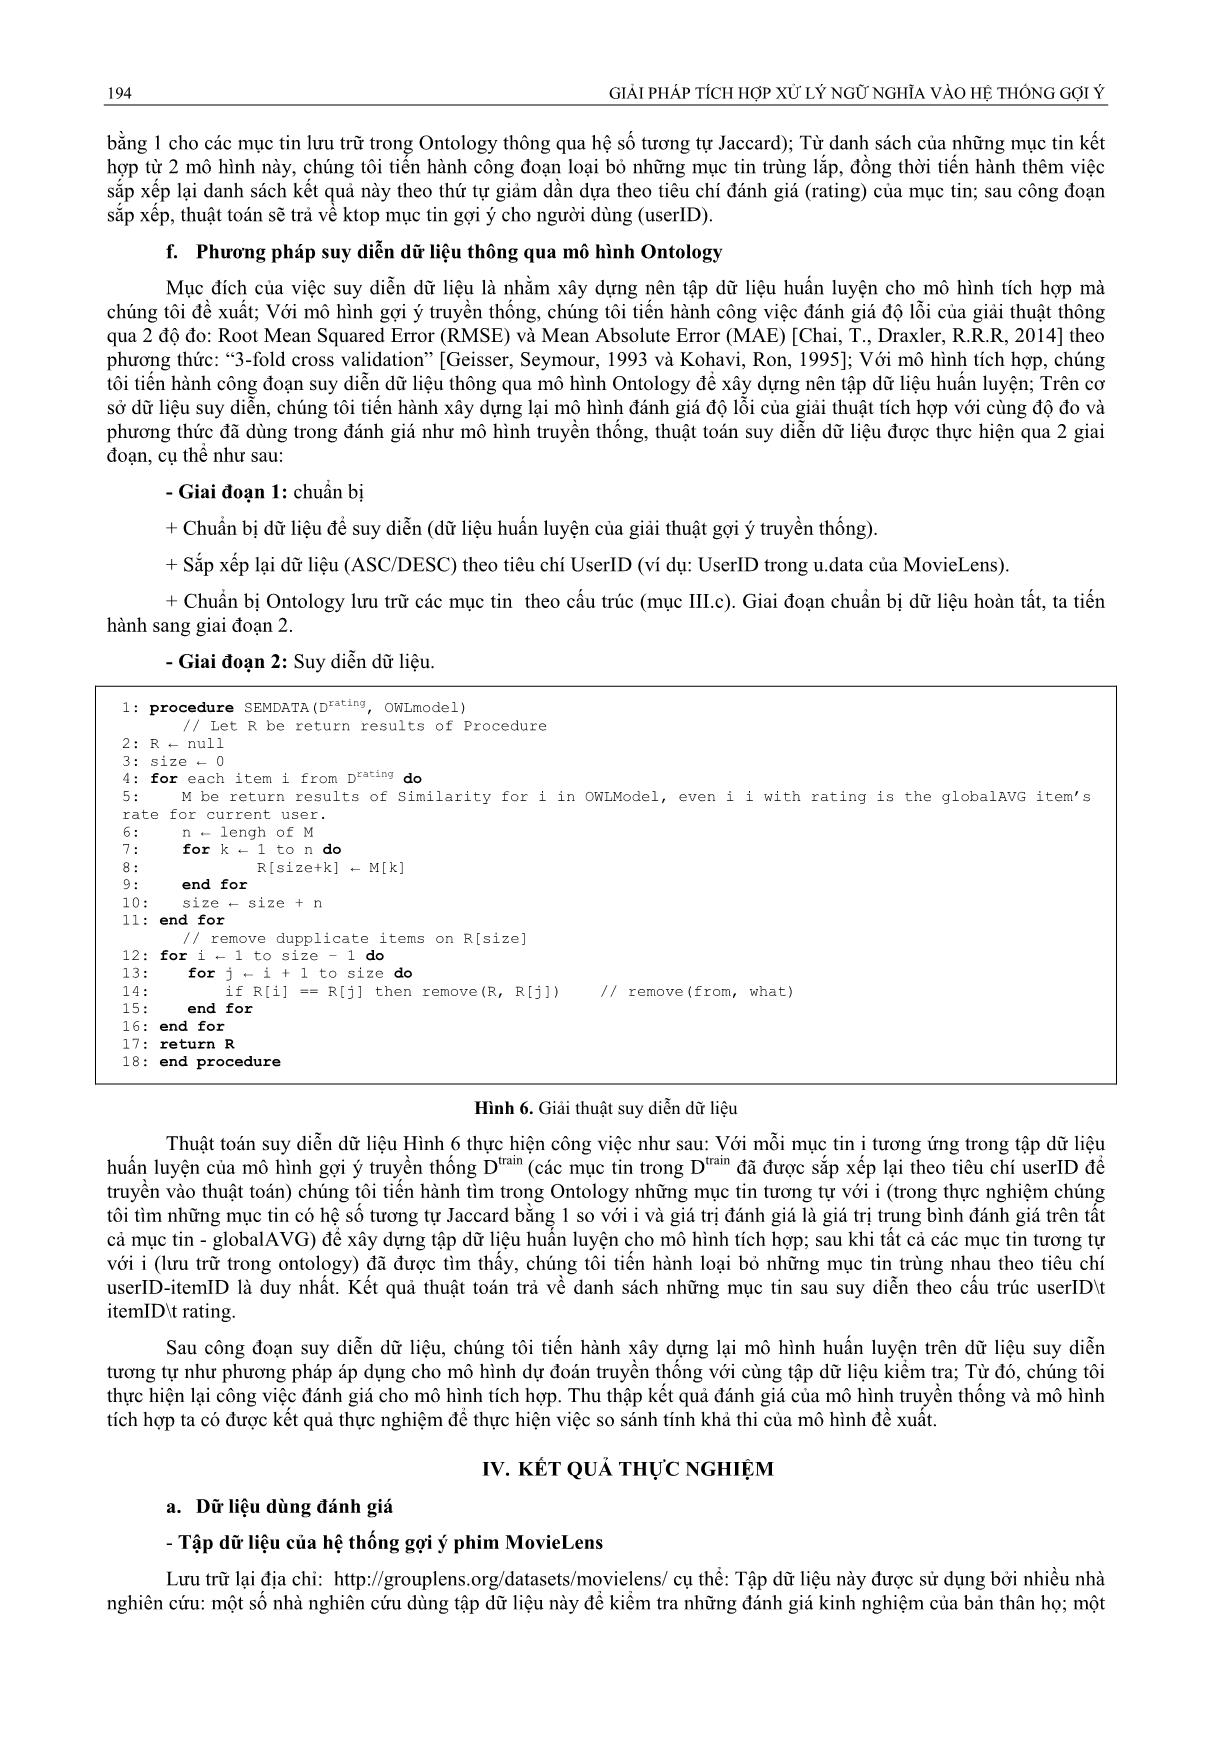 Giải pháp tích hợp xử lý ngữ nghĩa vào hệ thống gợi ý trang 6